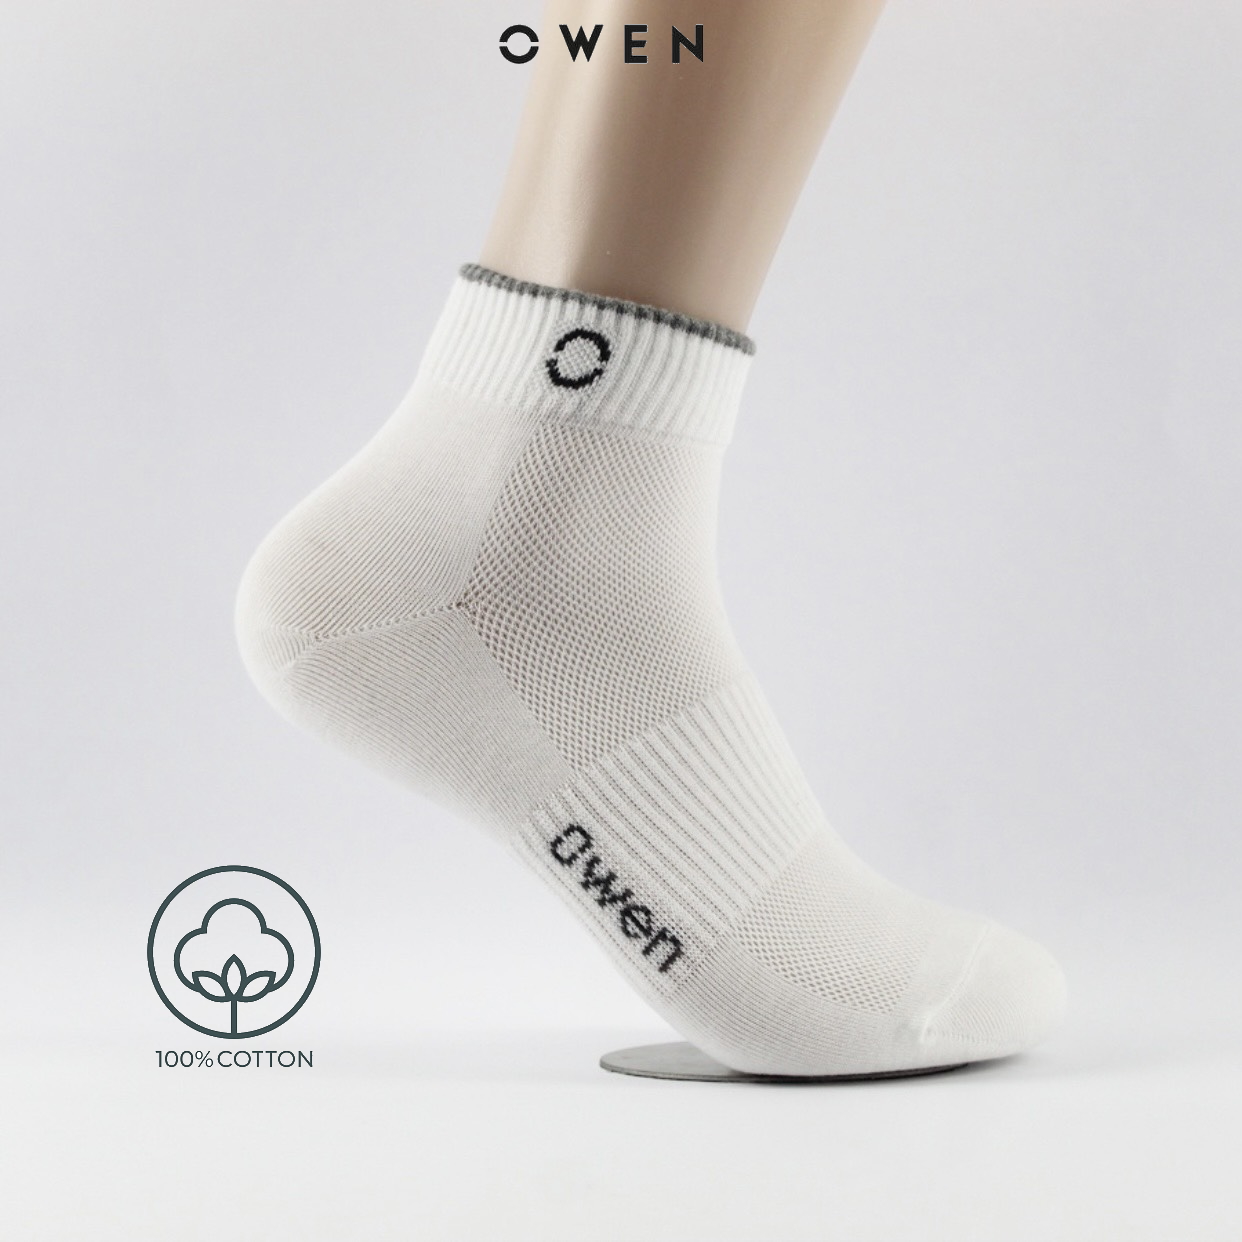 OWEN - Tất nam cổ trung Owen 100% cotton khử mùi